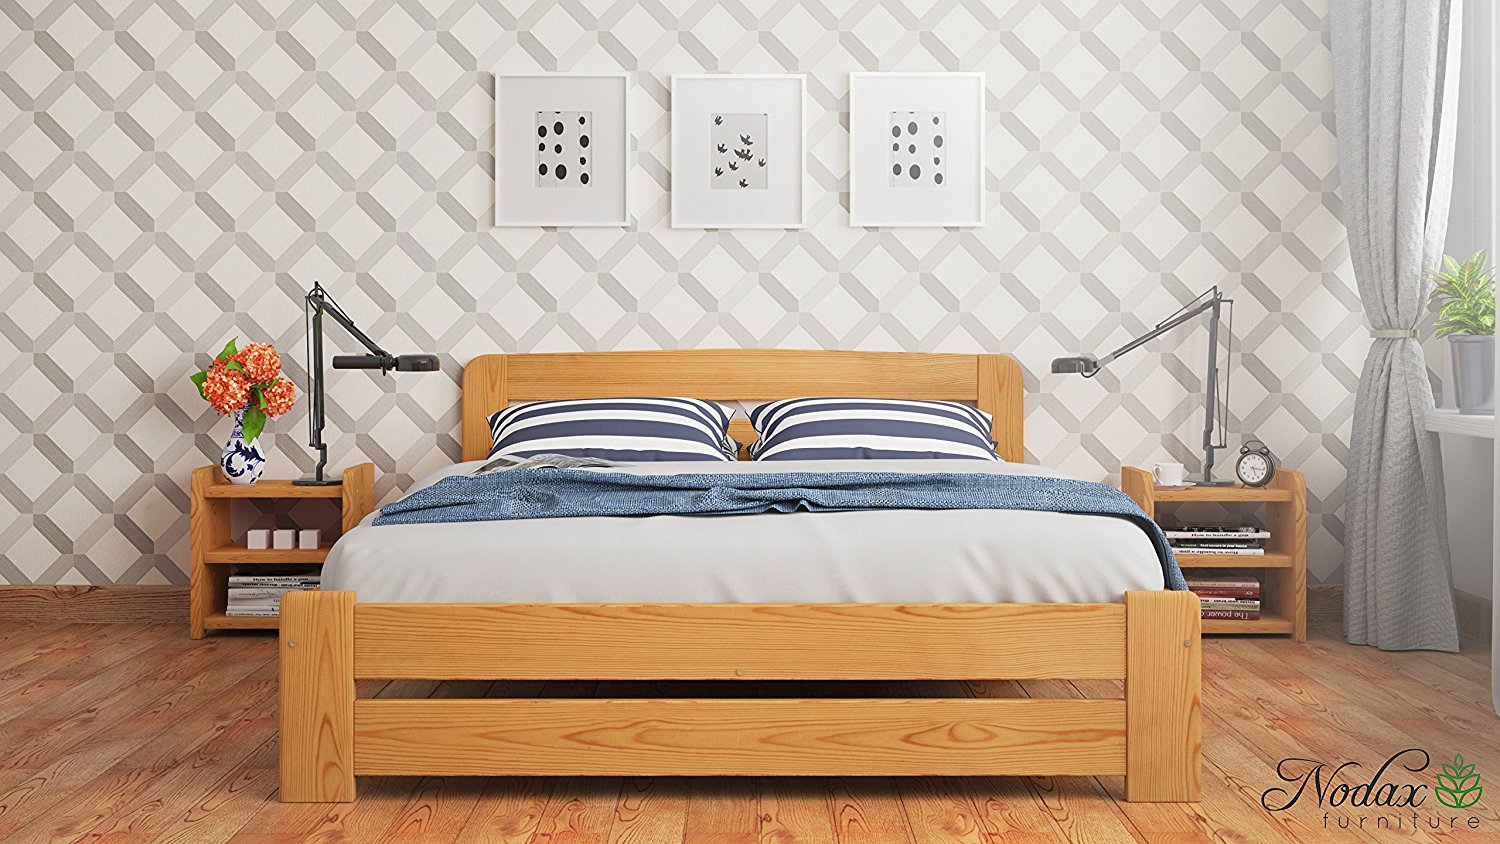 Wooden-bed-frame-Aurora-beds-online-solid